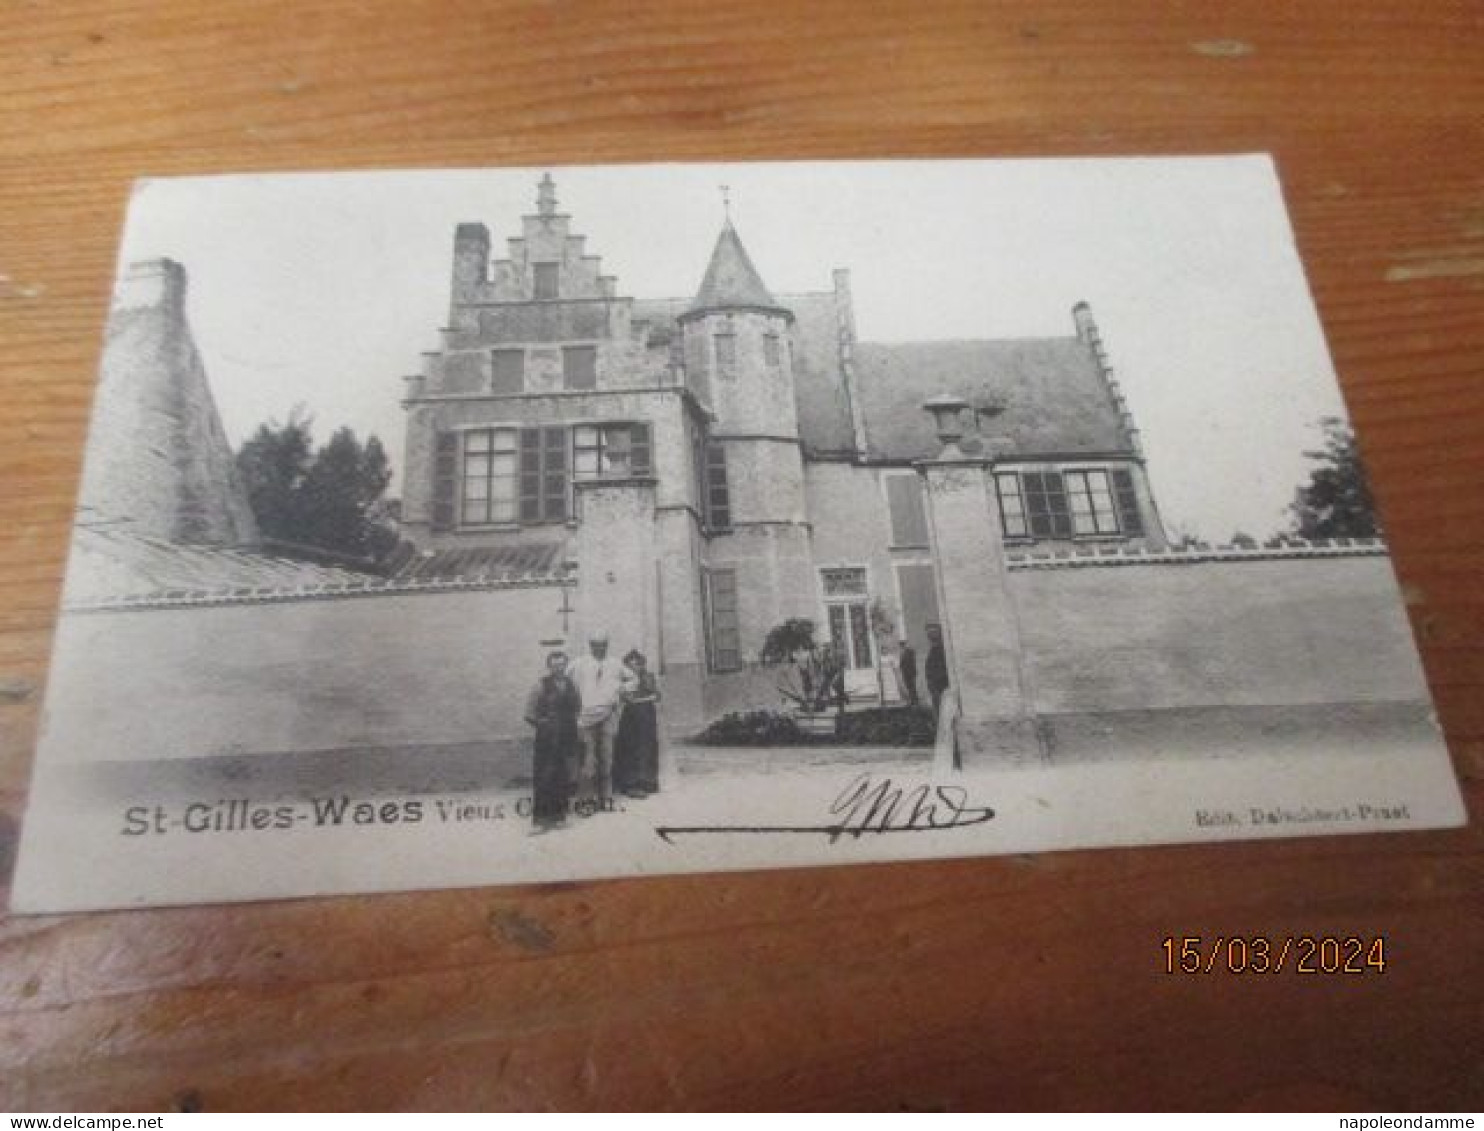 St Gilles Waes, Vieux Chateau - Sint-Gillis-Waas